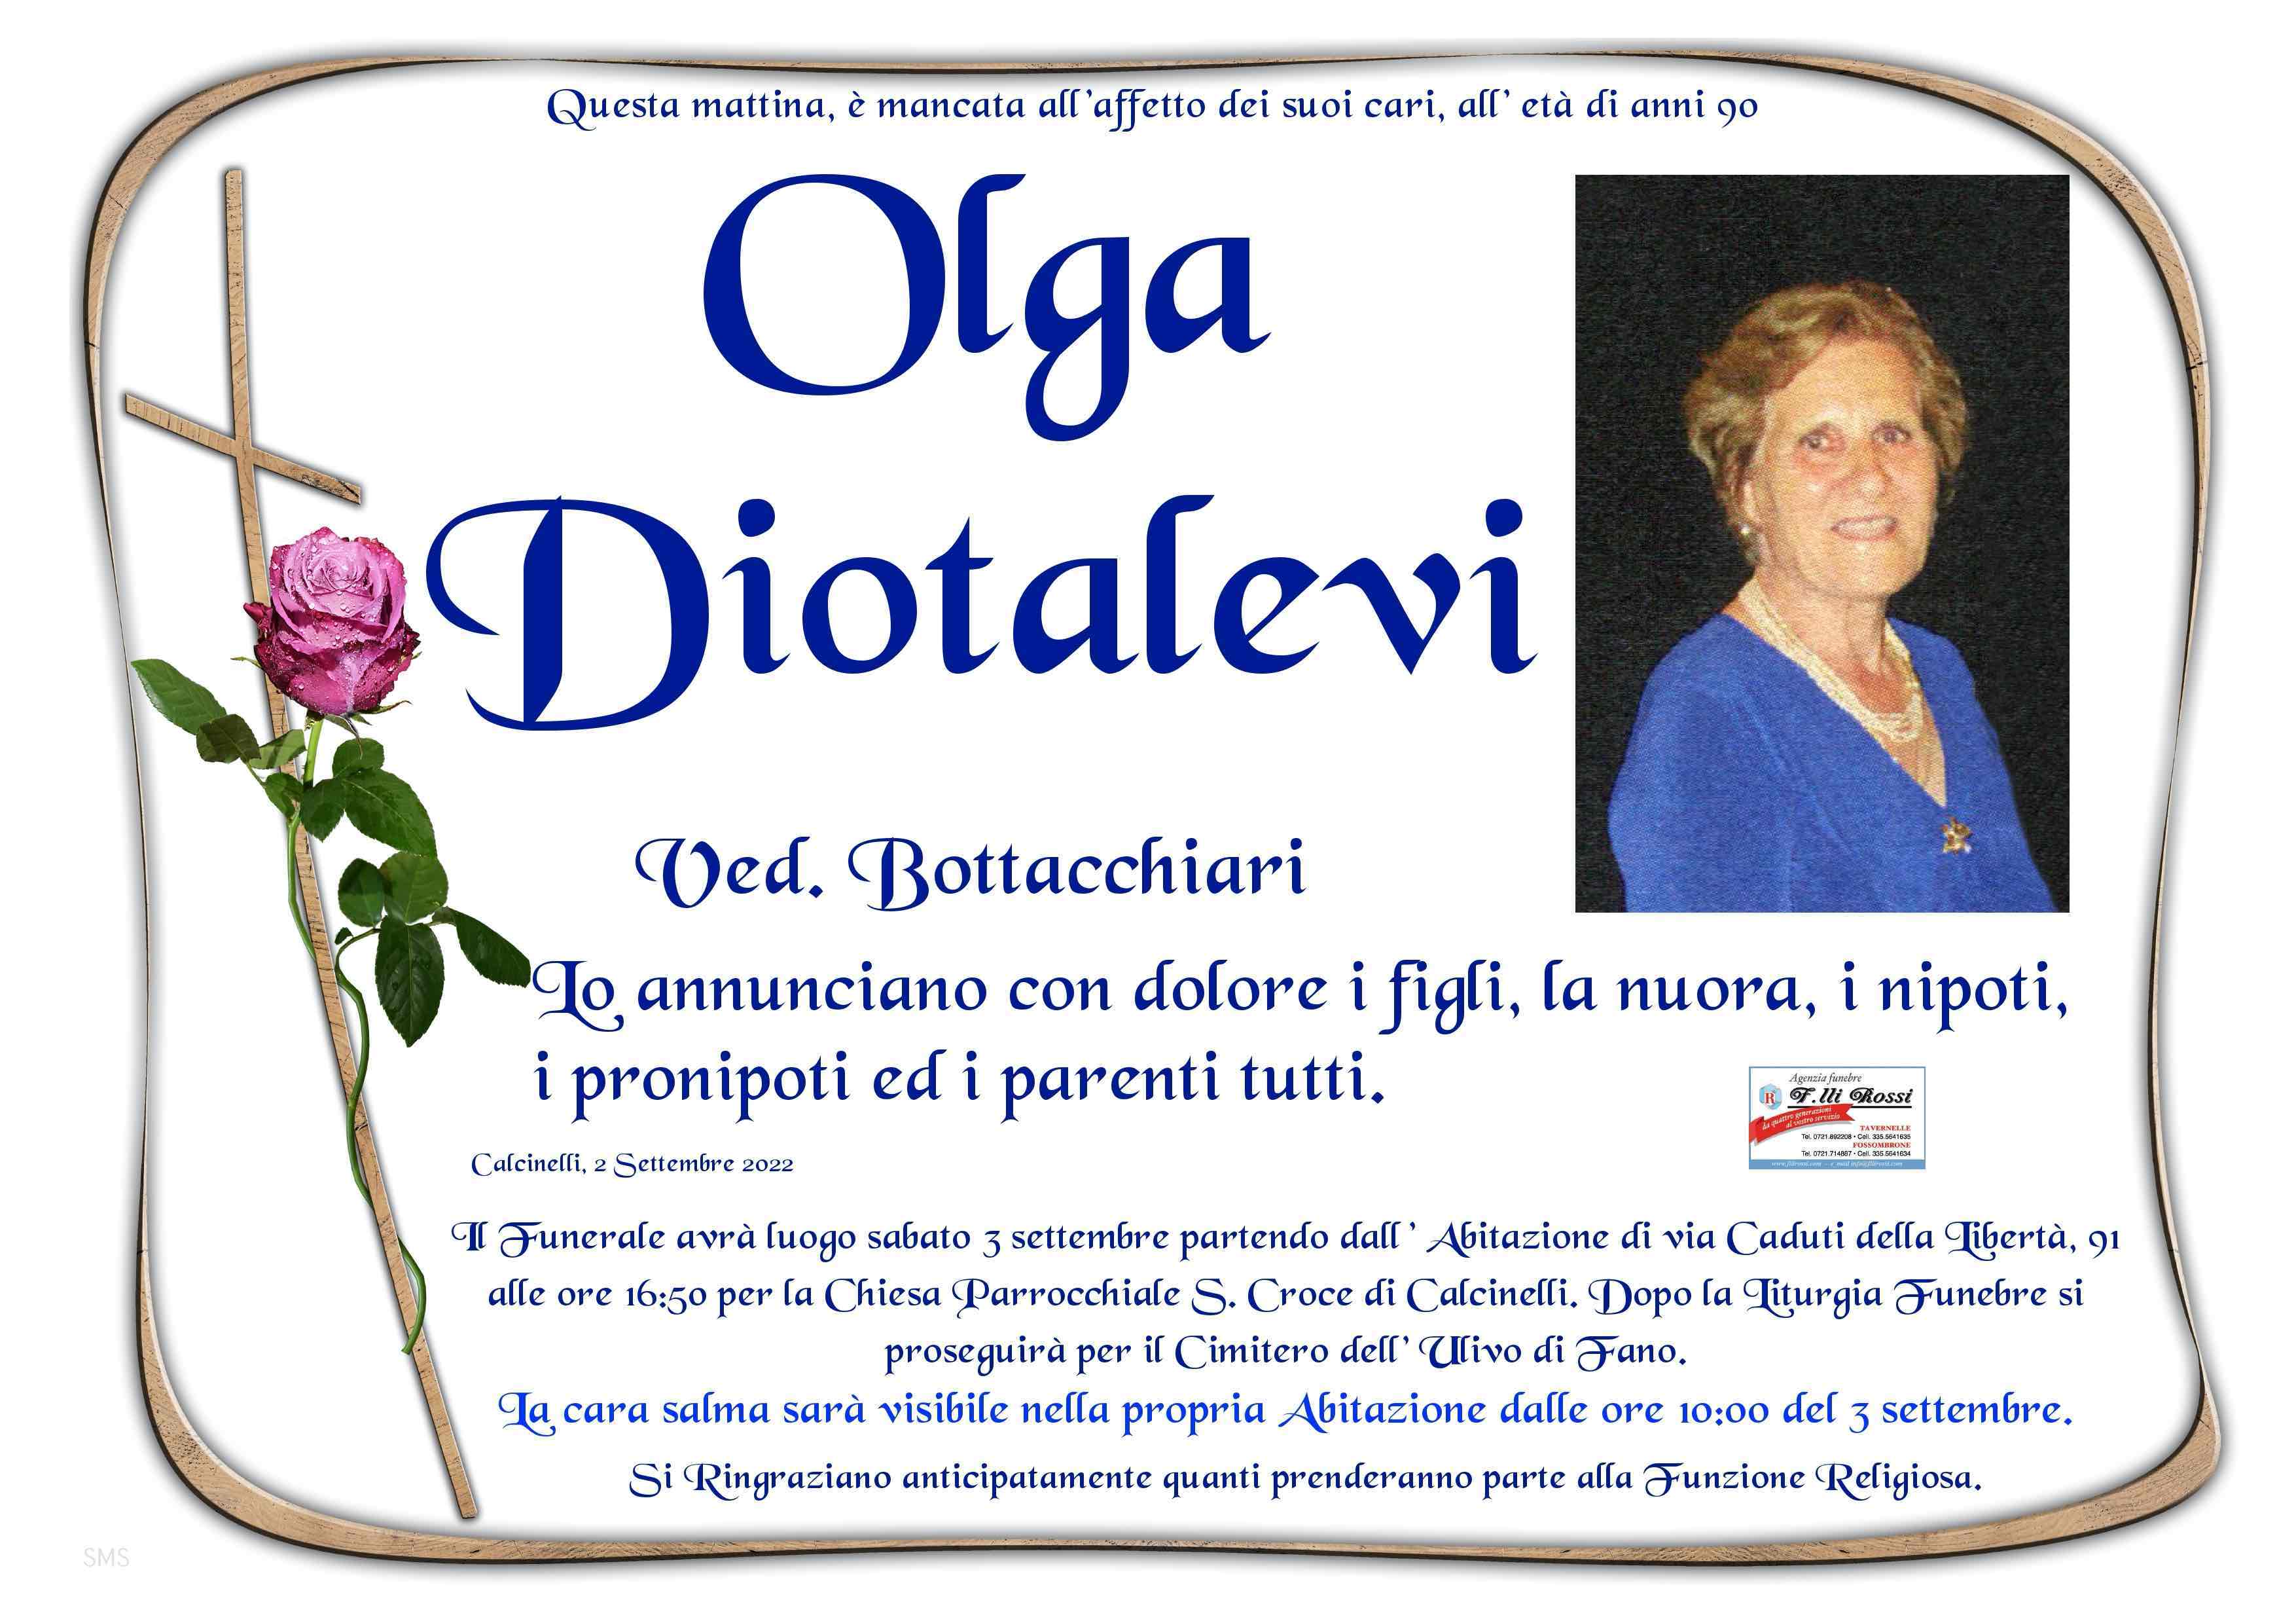 Olga Diotalevi